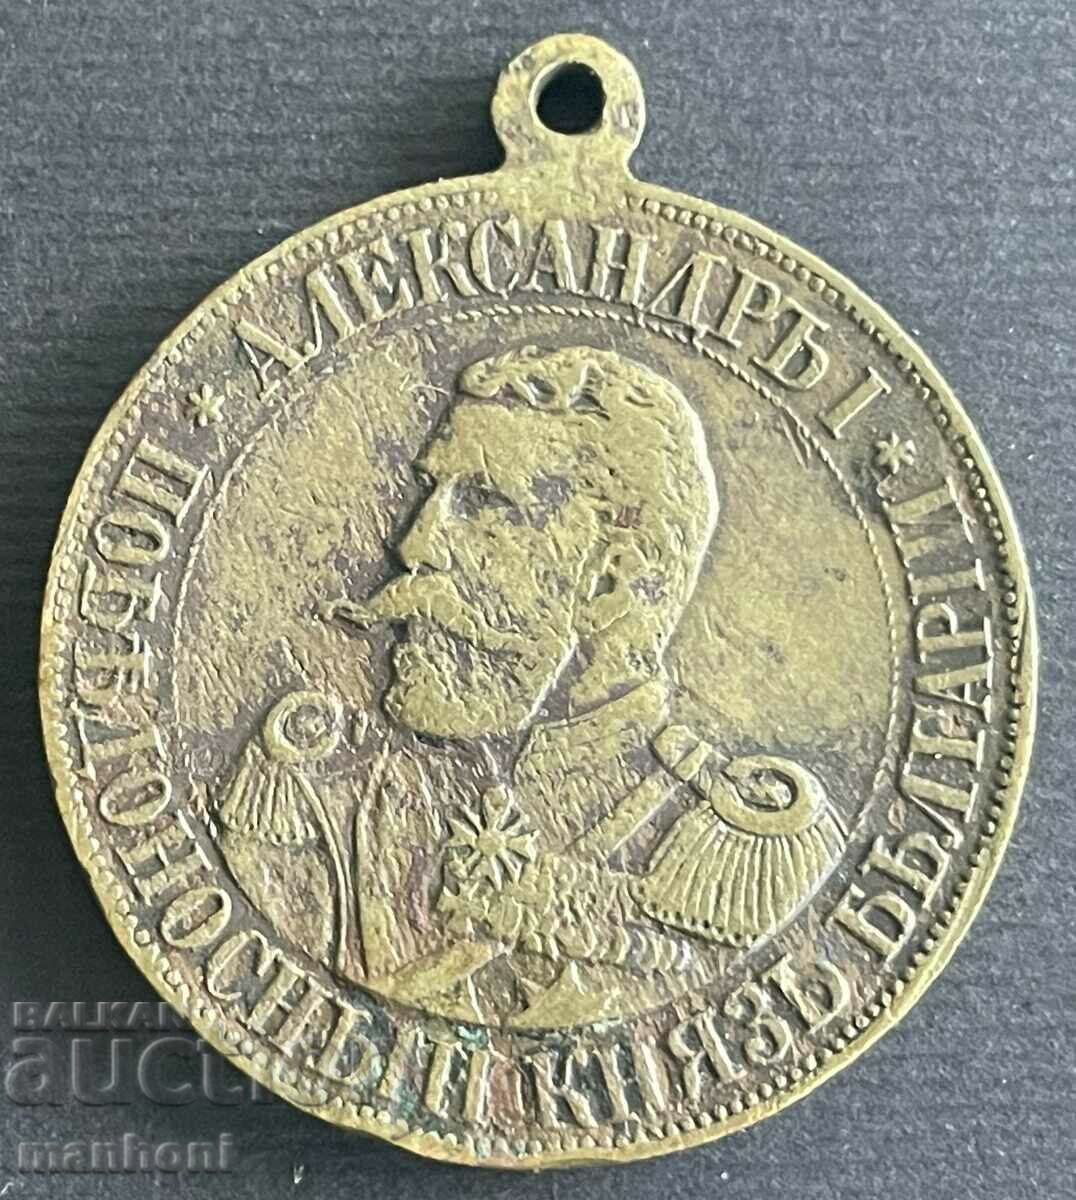 5543 Μετάλλιο του Πριγκιπάτου της Βουλγαρίας Πρίγκιπας Μπάτενμπεργκ 1886.